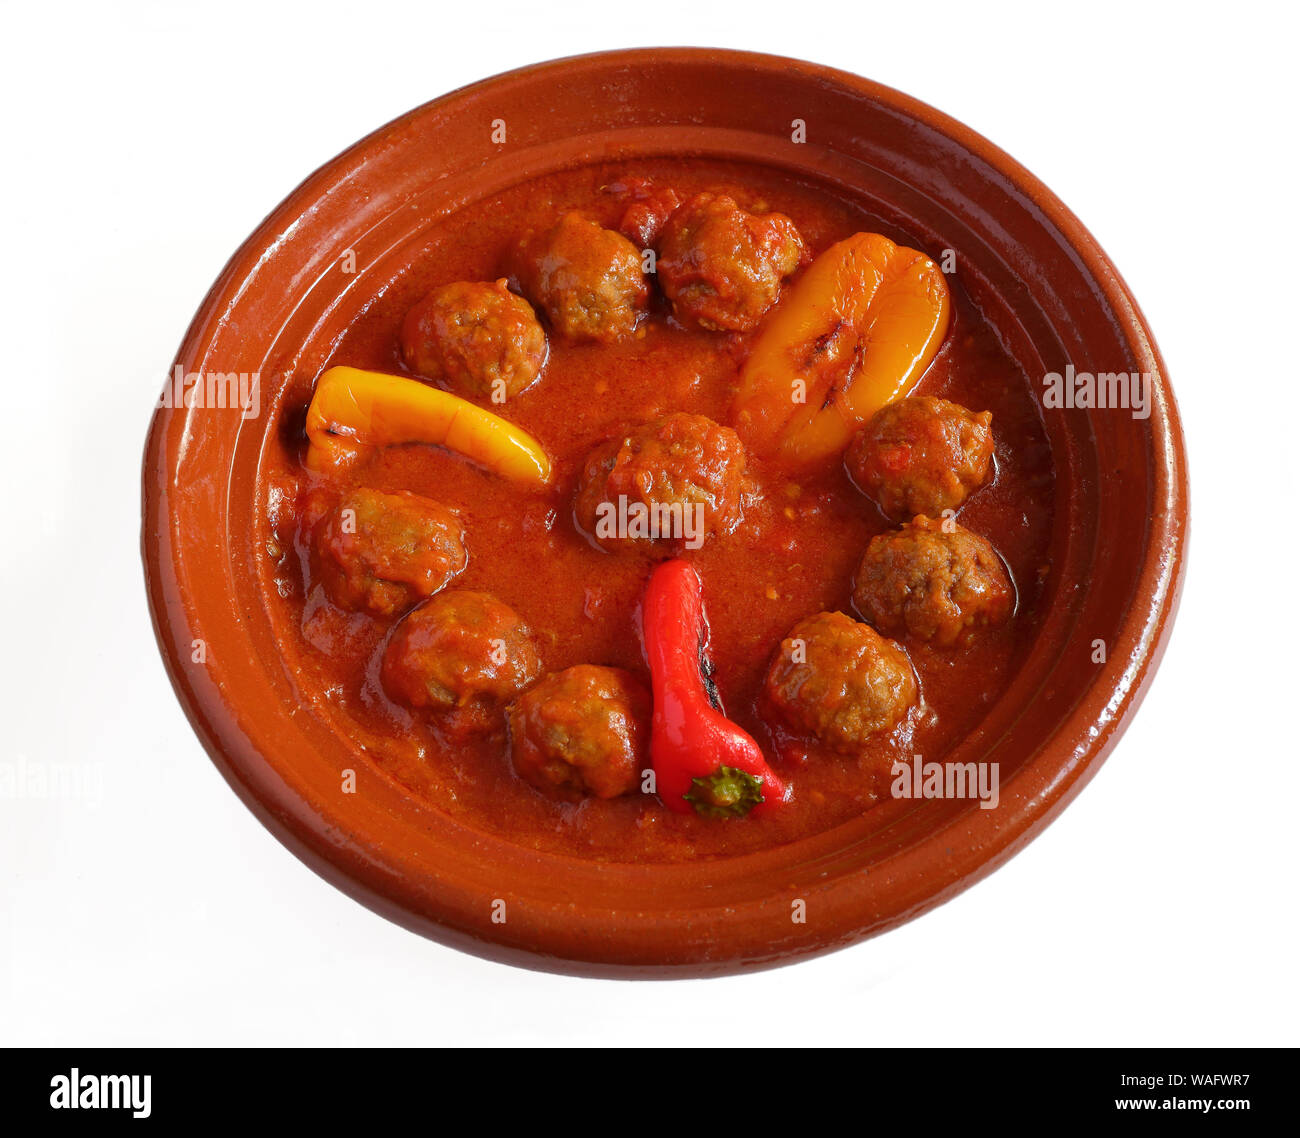 Marokko. Tajine von Kefta. Marokkanische und libanesische Gericht Fleischbällchen in einer Tomatensoße mit Paprika, Kümmel, Zwiebeln. In einem typischen Steingut Schale gekocht. Stockfoto